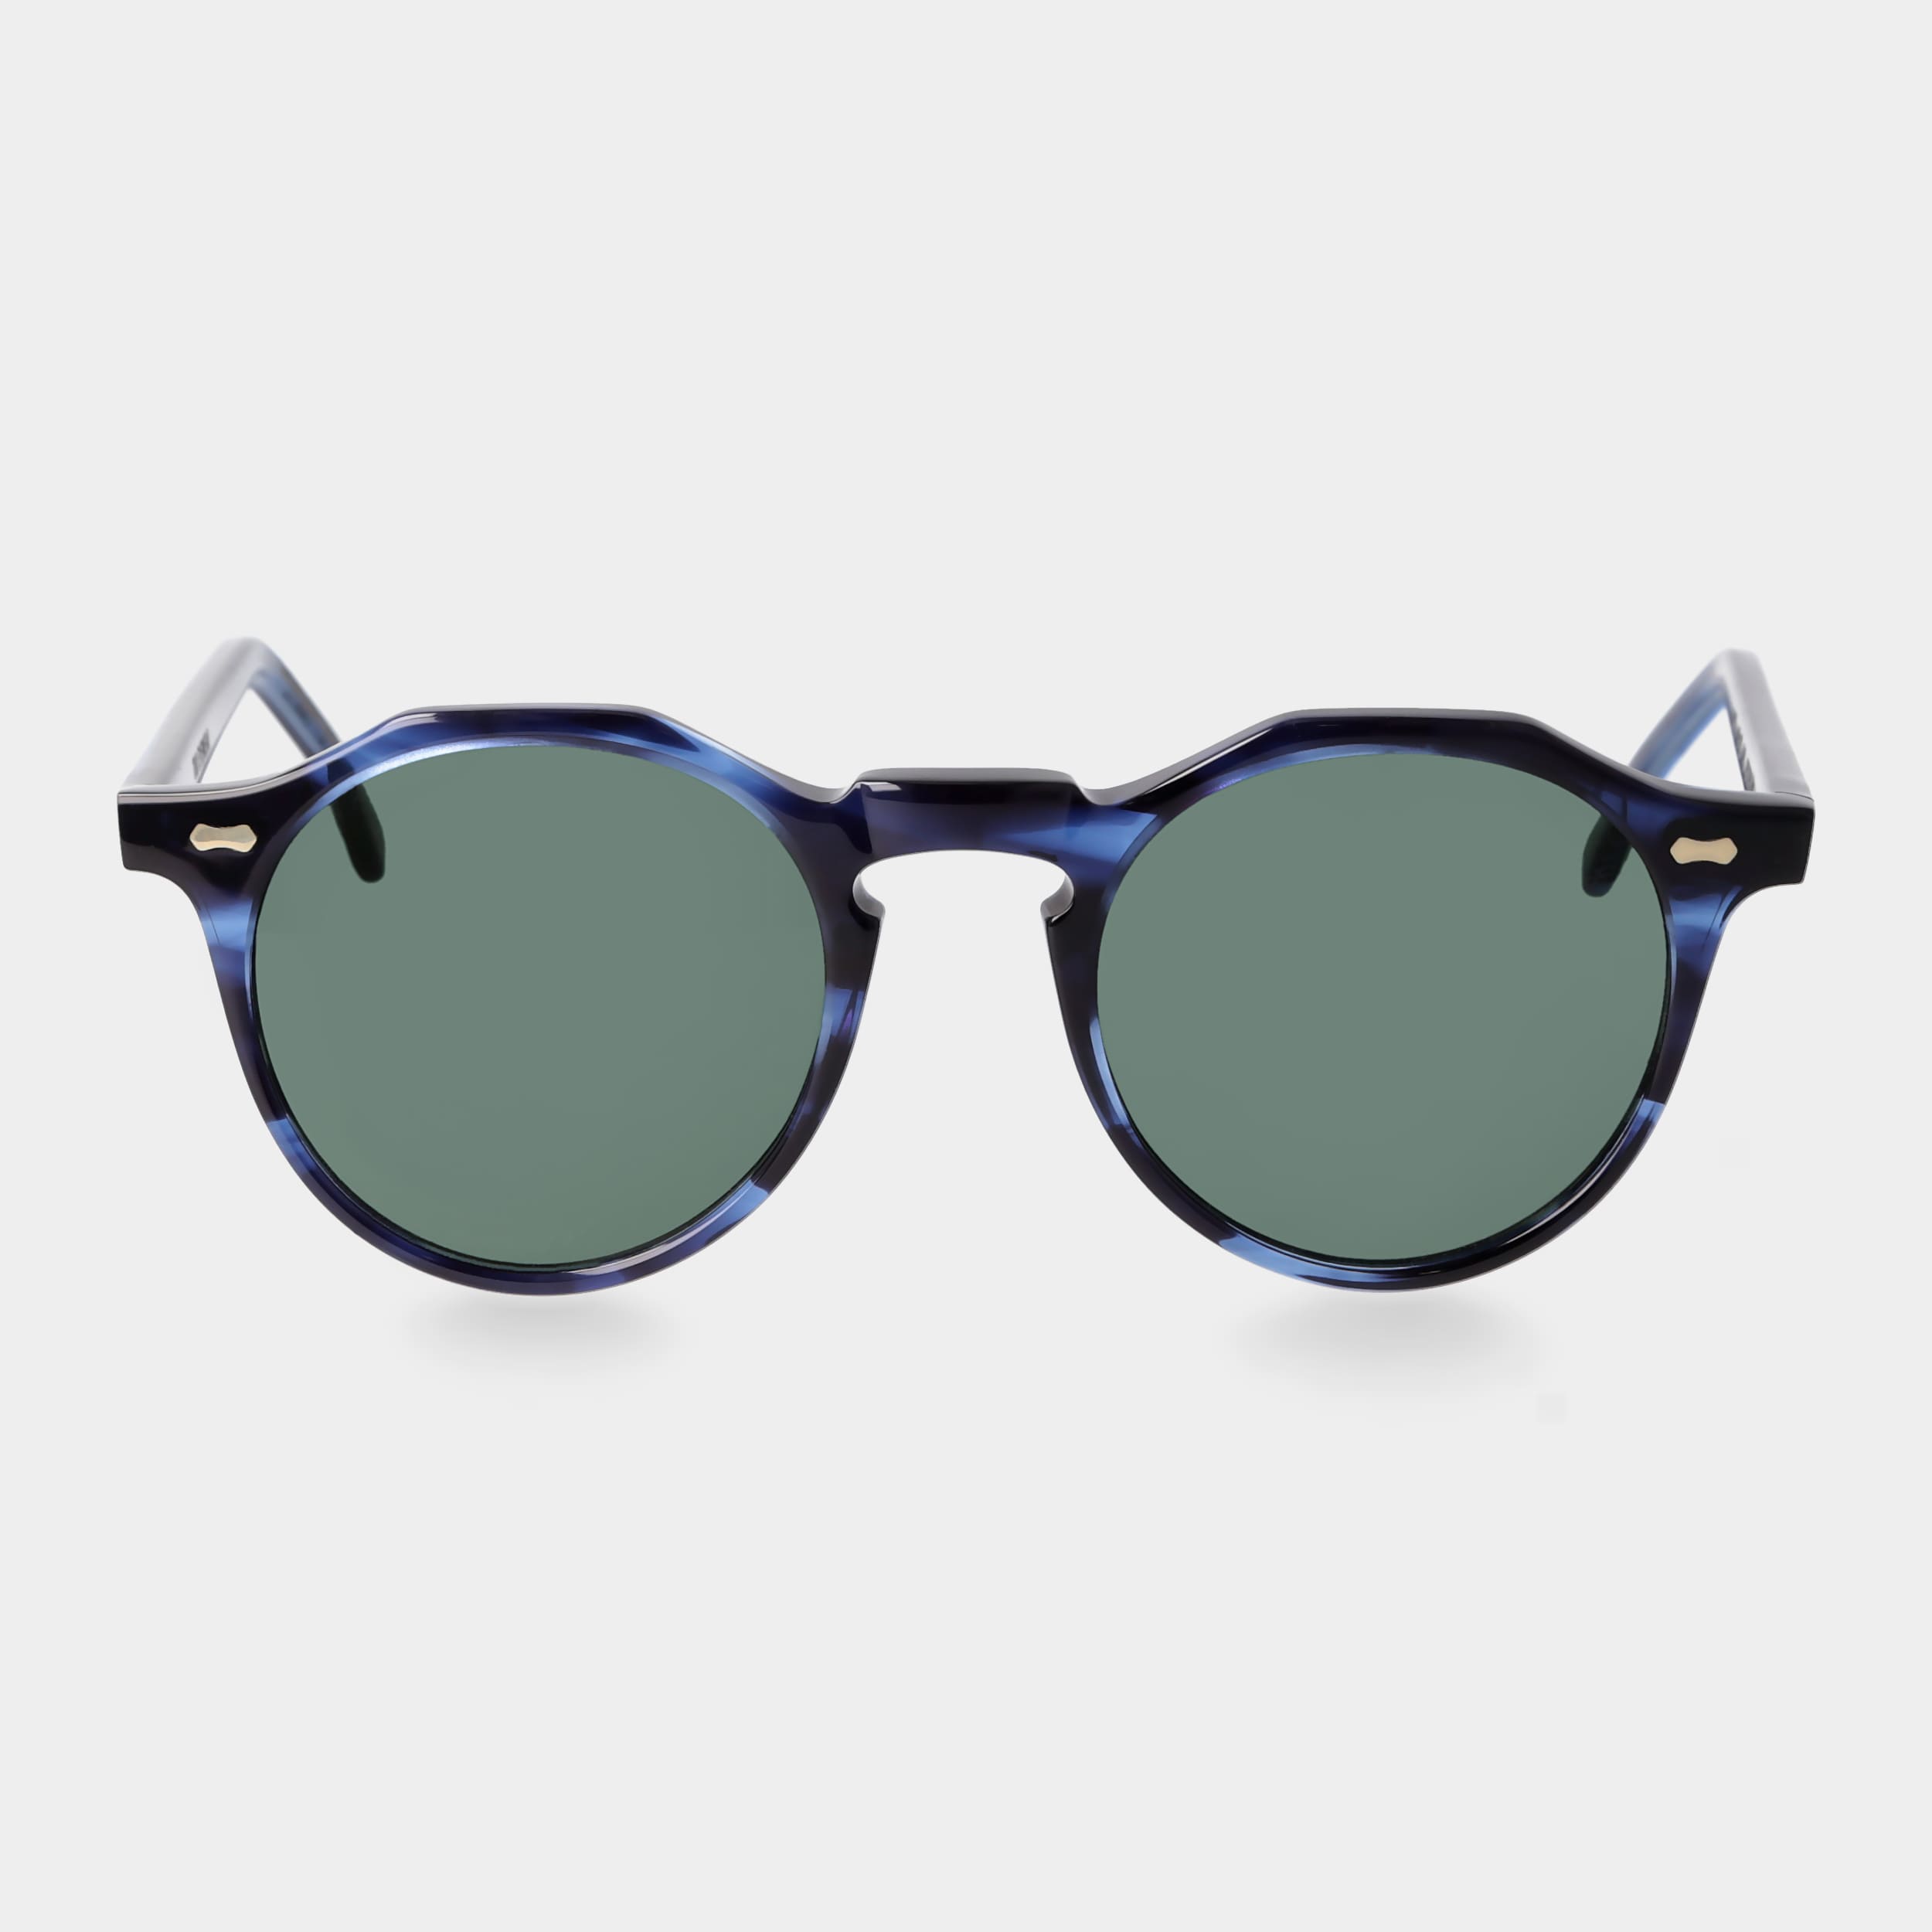 sunglasses-lapel-ocean-bottle-green-tbd-eyewear-front